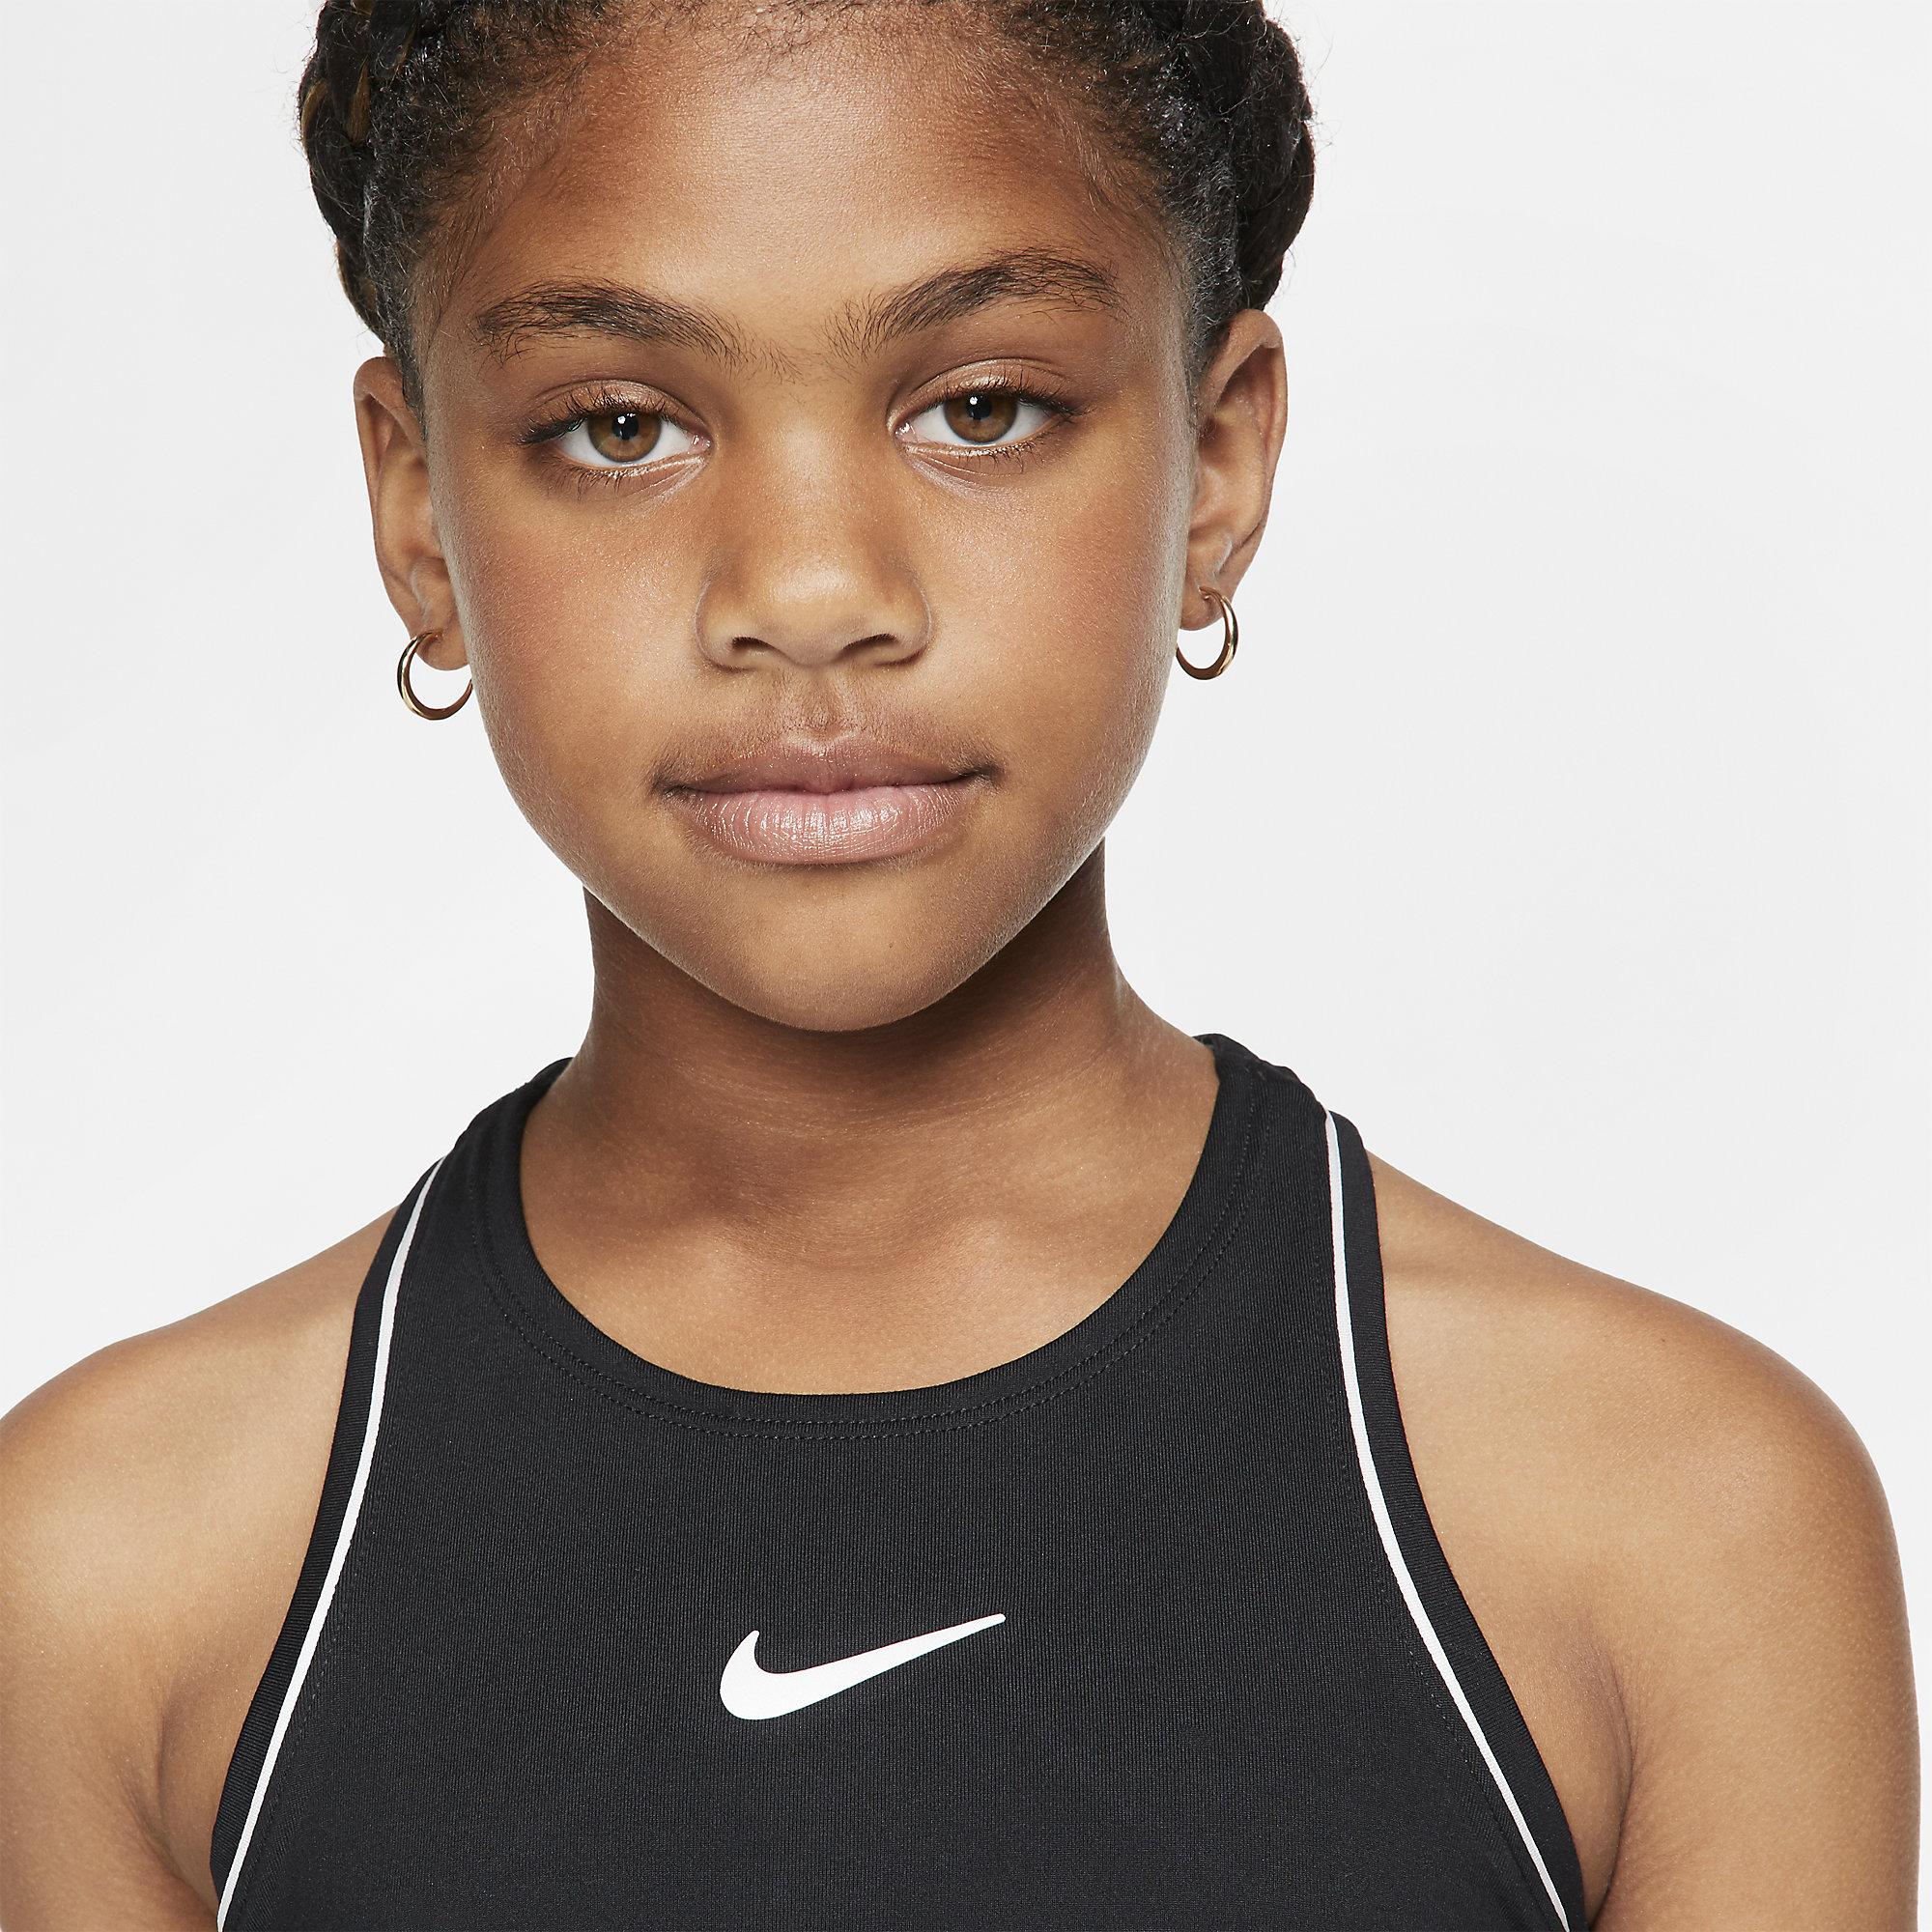 Nike Girls Dri-FIT Tennis Tank - Black/White - Tennisnuts.com